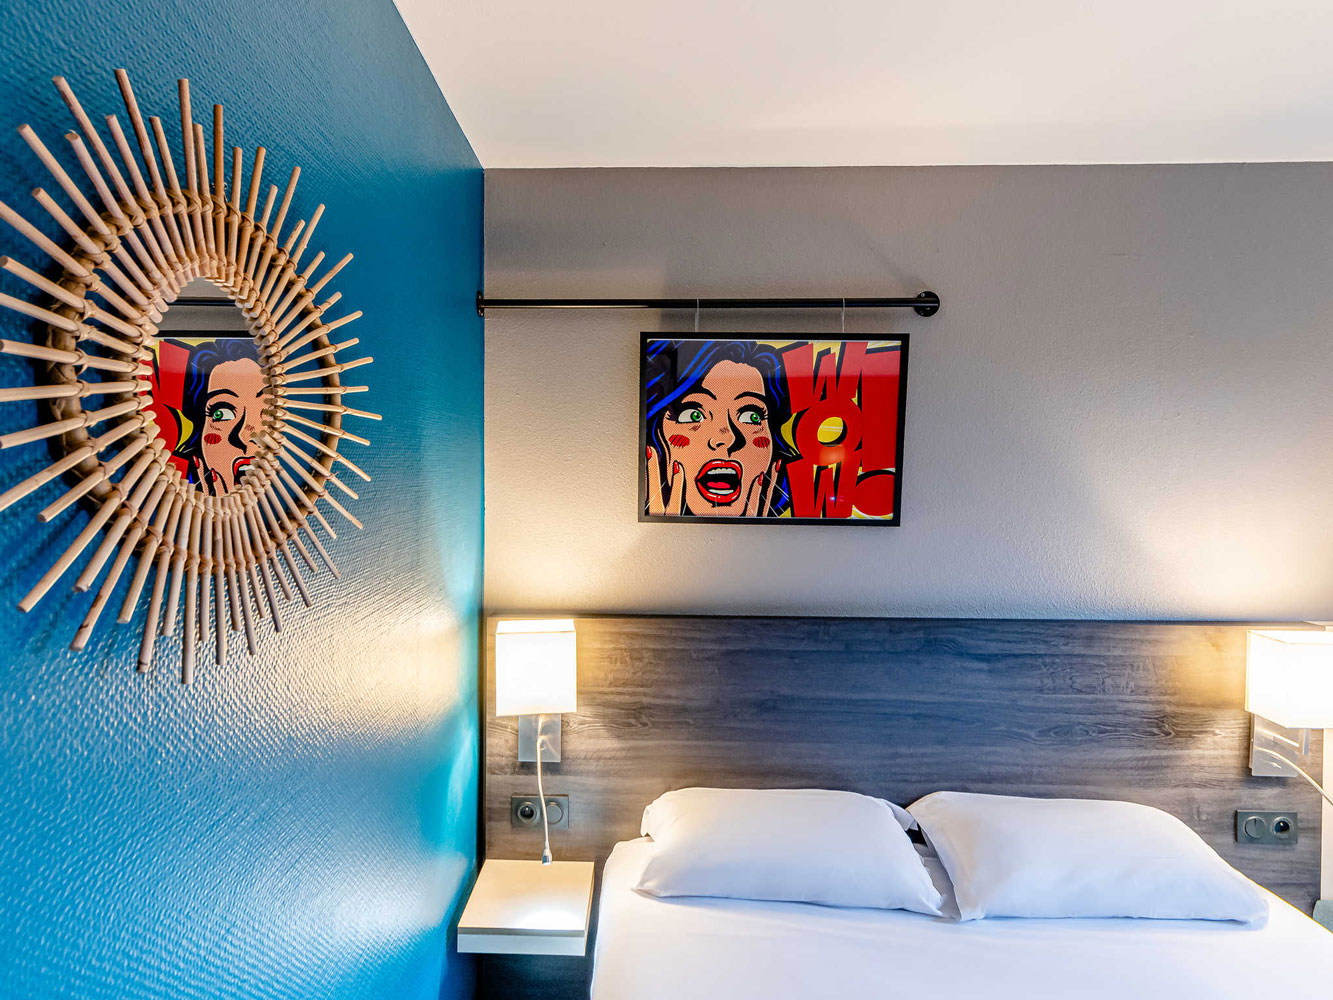 Décoration et agencement pop art pour les chambres de l'hôtel Greet de Foirac